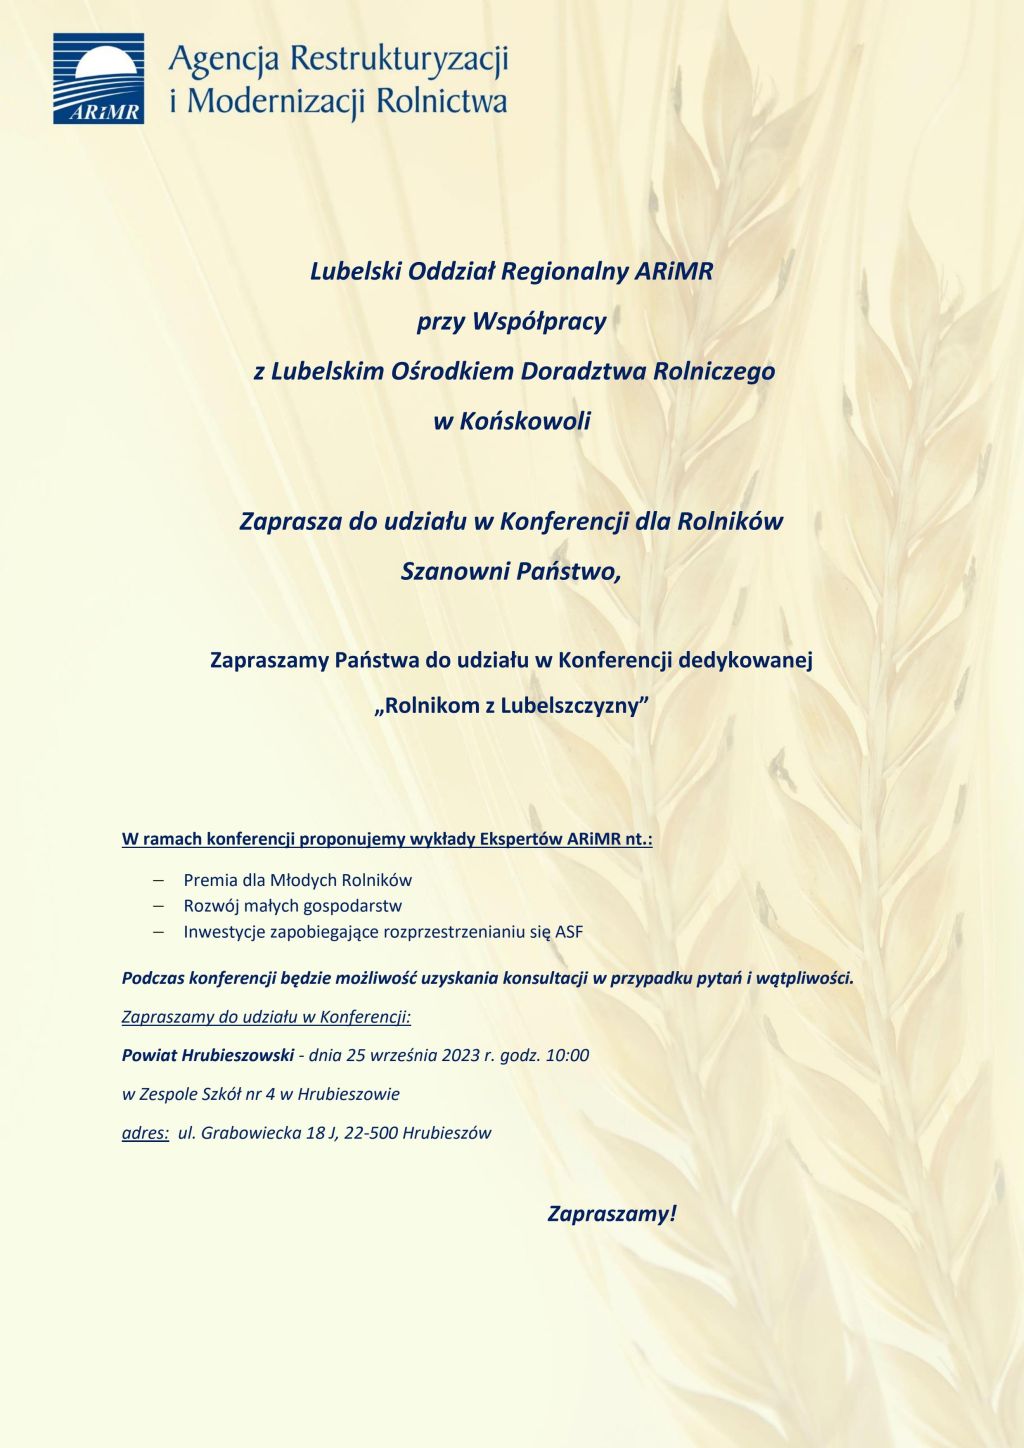 Zaproszenie na Konferencję dedykowaną „Rolnikom z Lubelszczyzny”